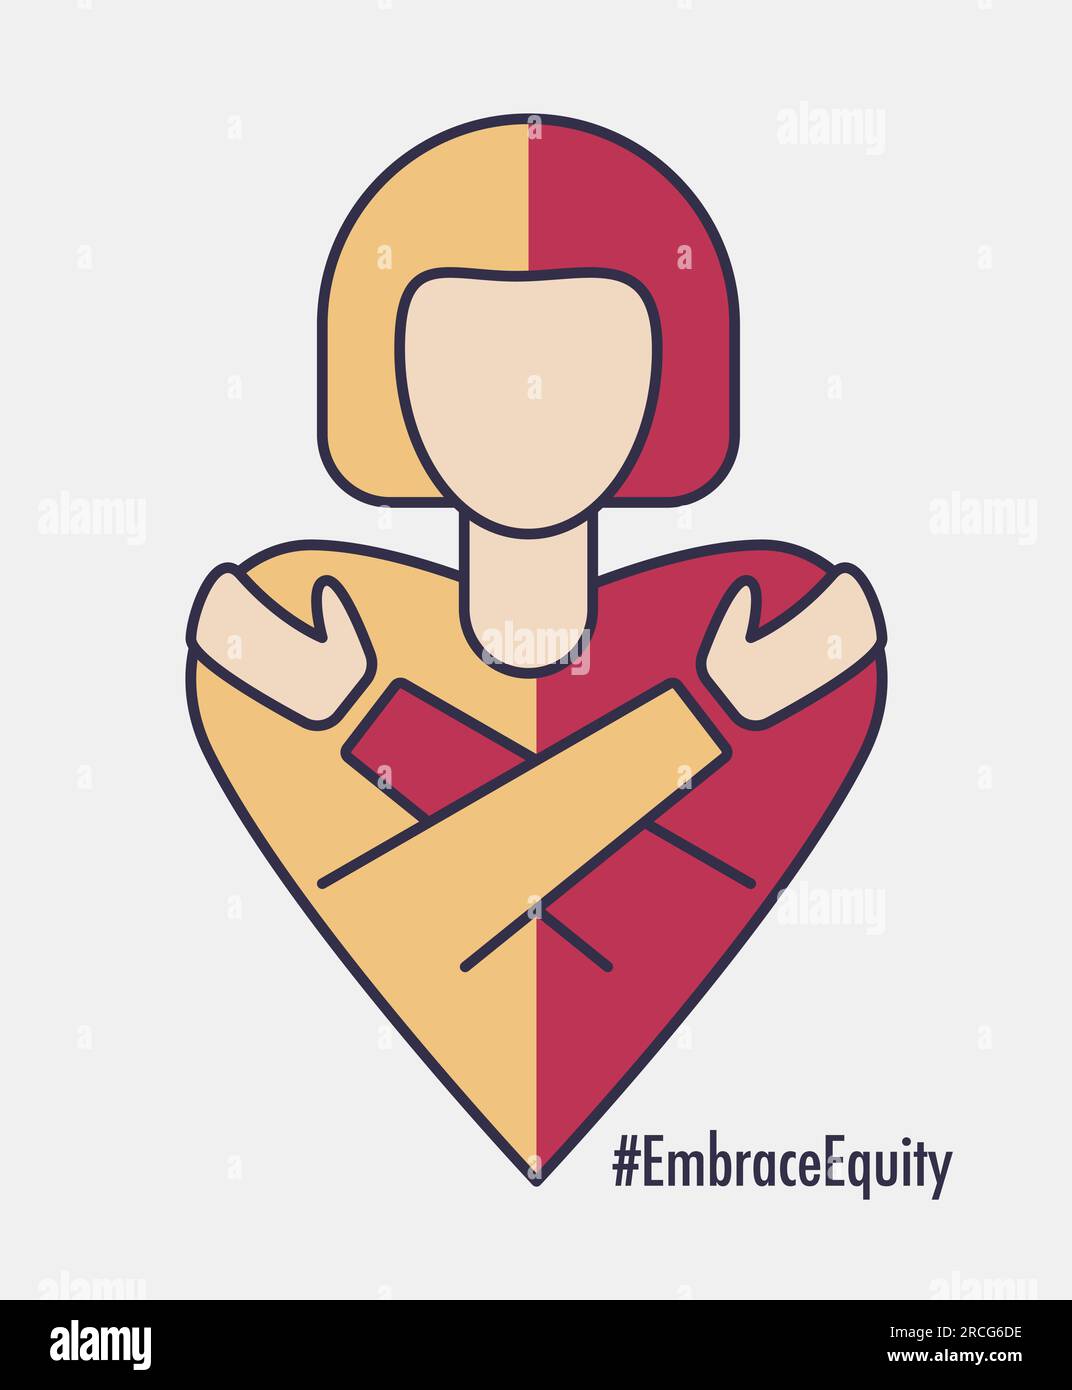 Journée internationale de la femme 2023 #EmbraceEquity donner à l'équité une large adhésion. Adoptez l'équité. Illustration vectorielle. Elément de conception isolé Illustration de Vecteur